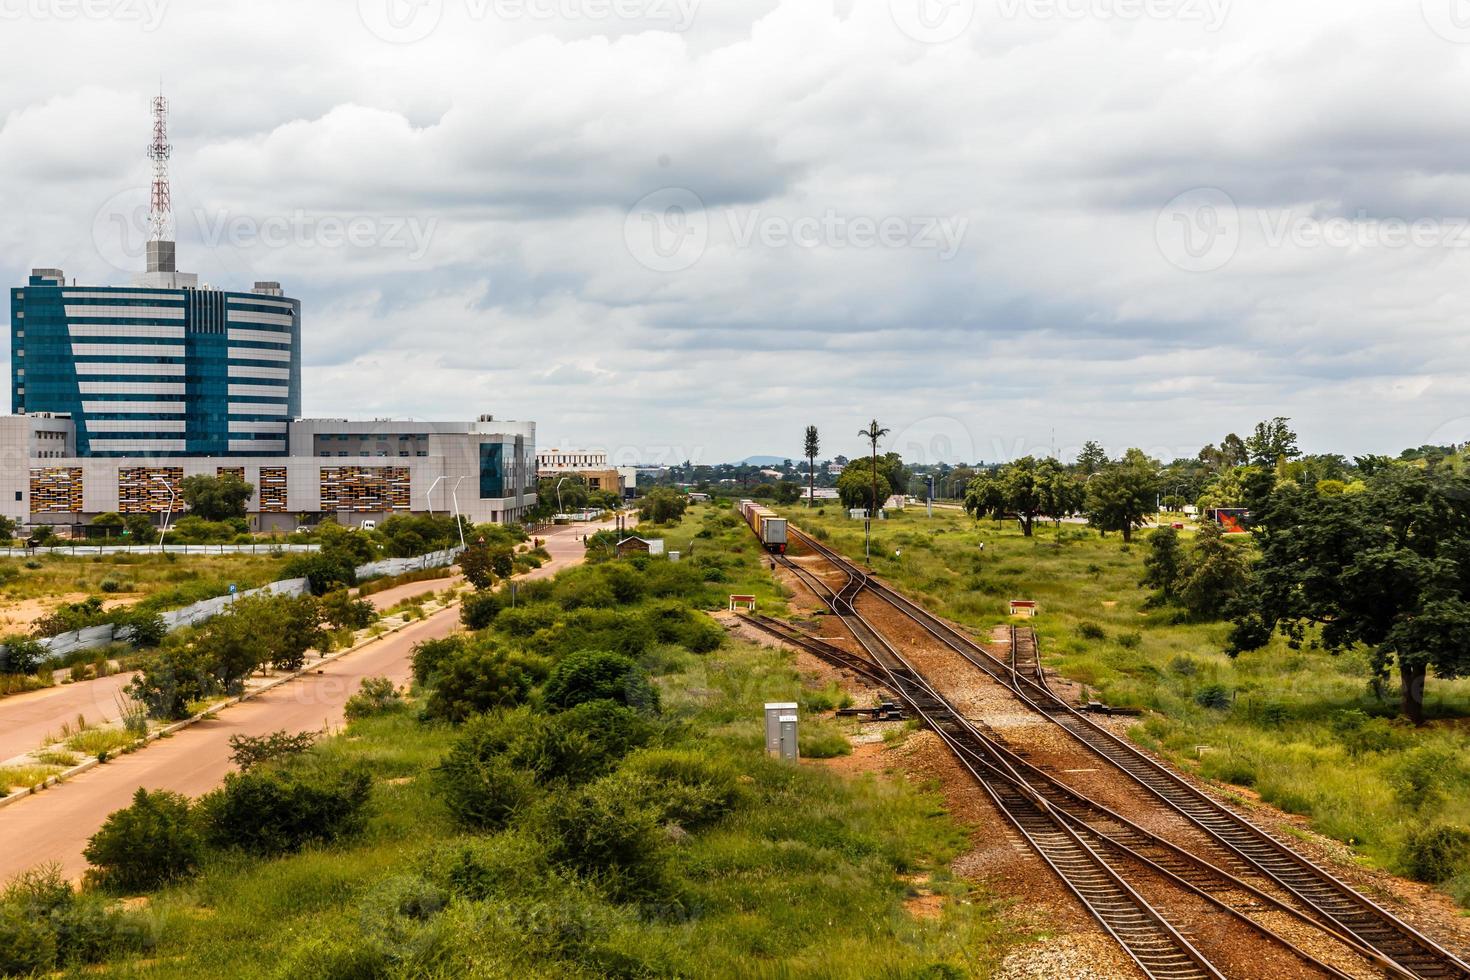 spoorweg en snel ontwikkelen centraal bedrijf wijk, gaboron, Botswana, Afrika, 2017 foto